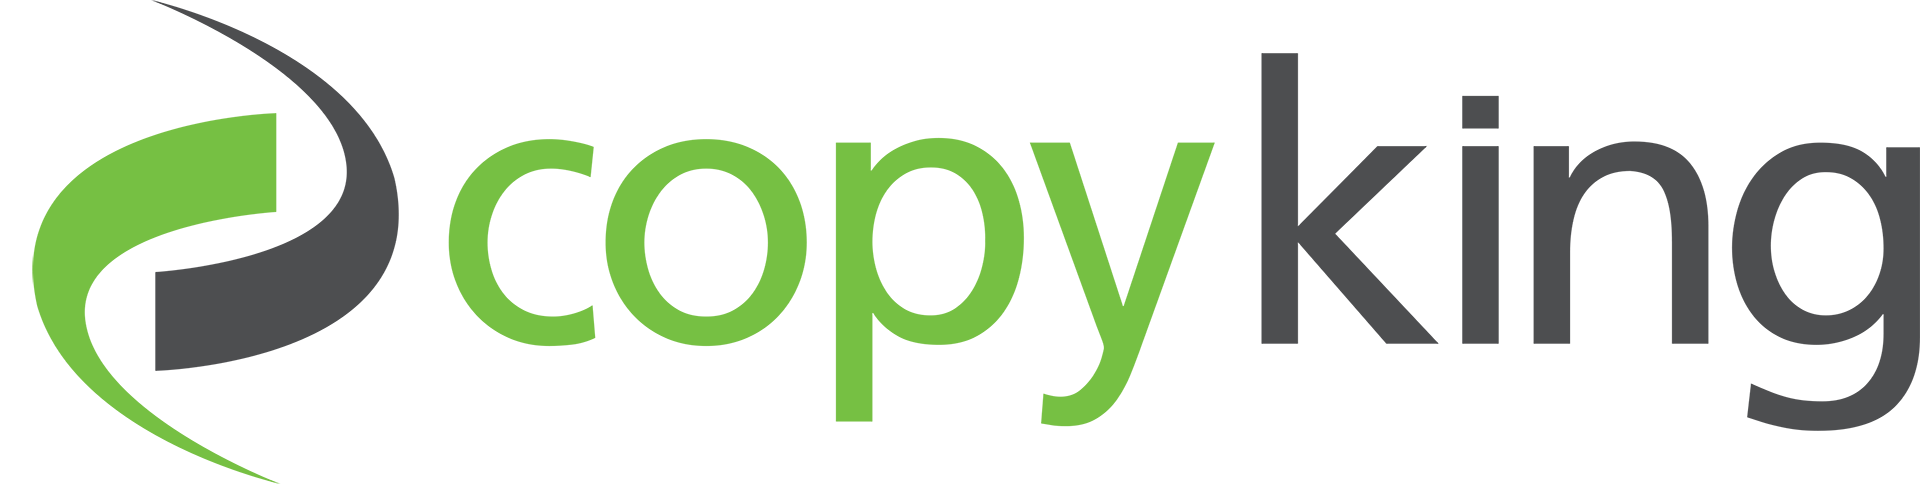 Copyking-Logo